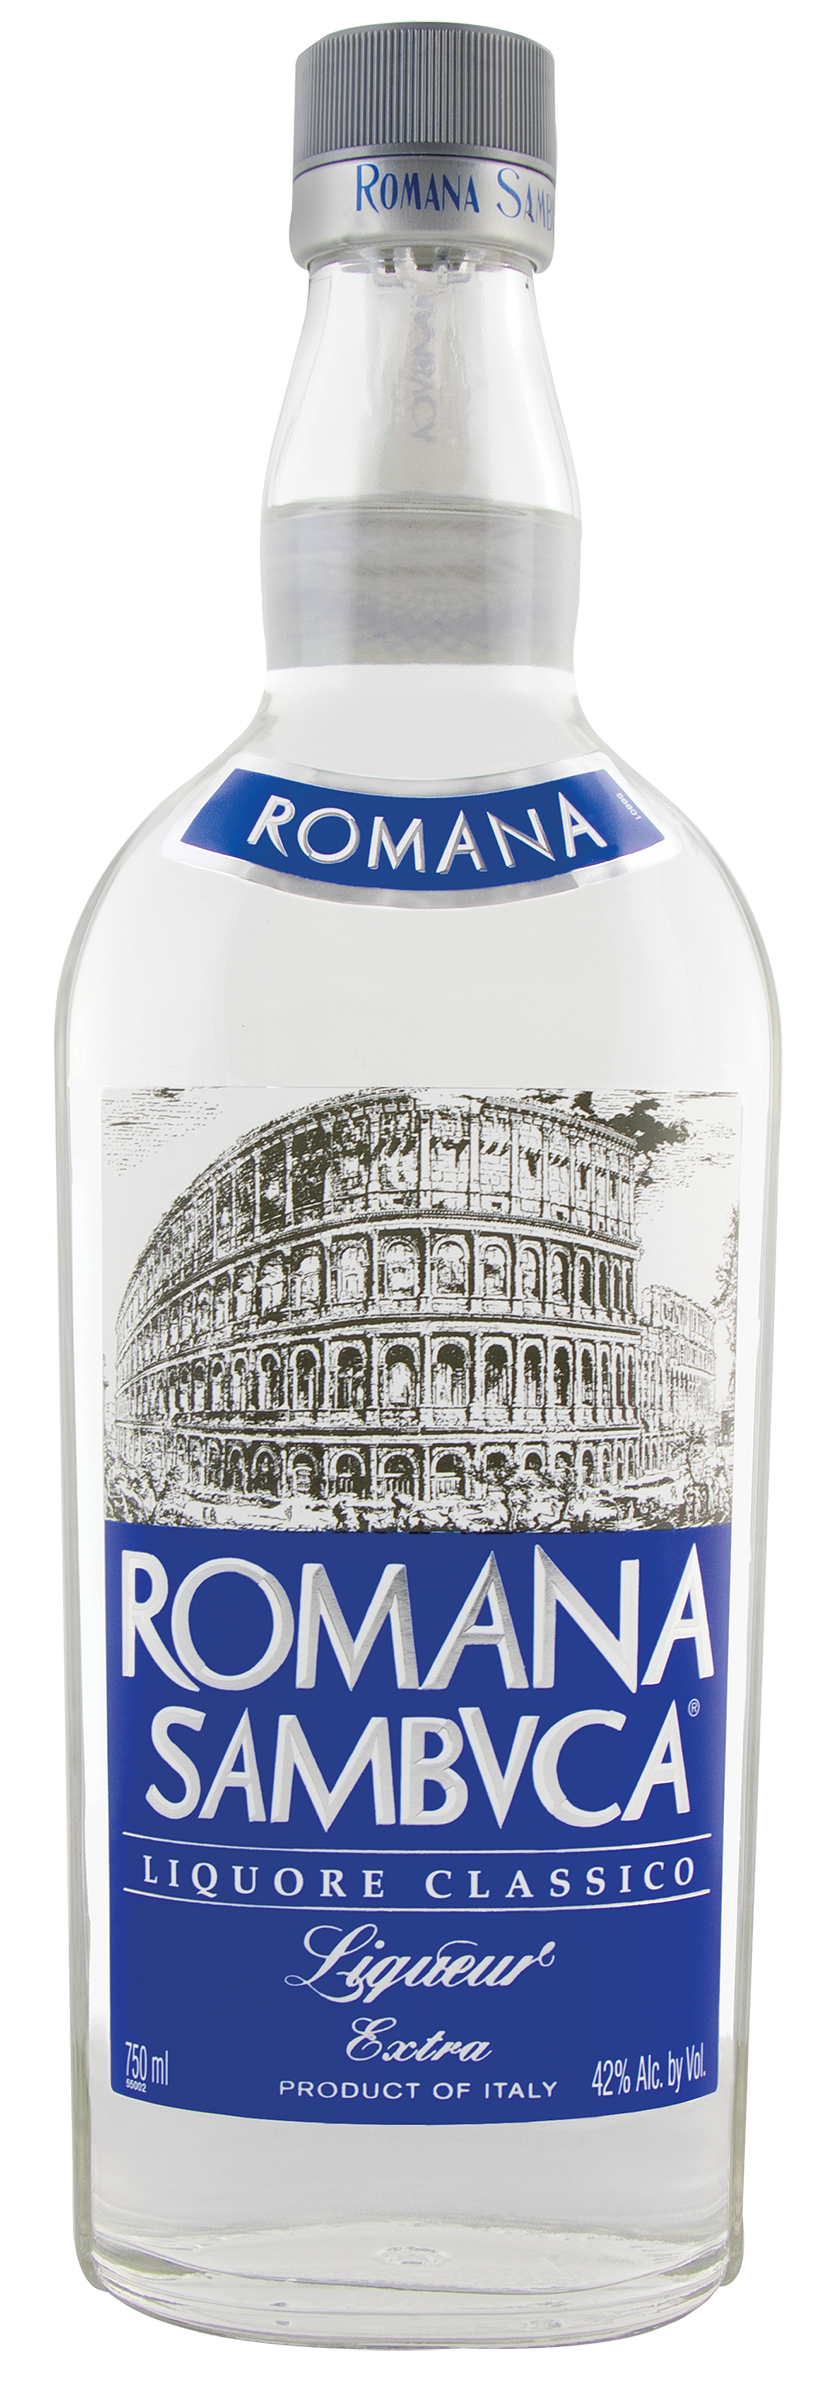 Romana Sambvca 750ml Bottle